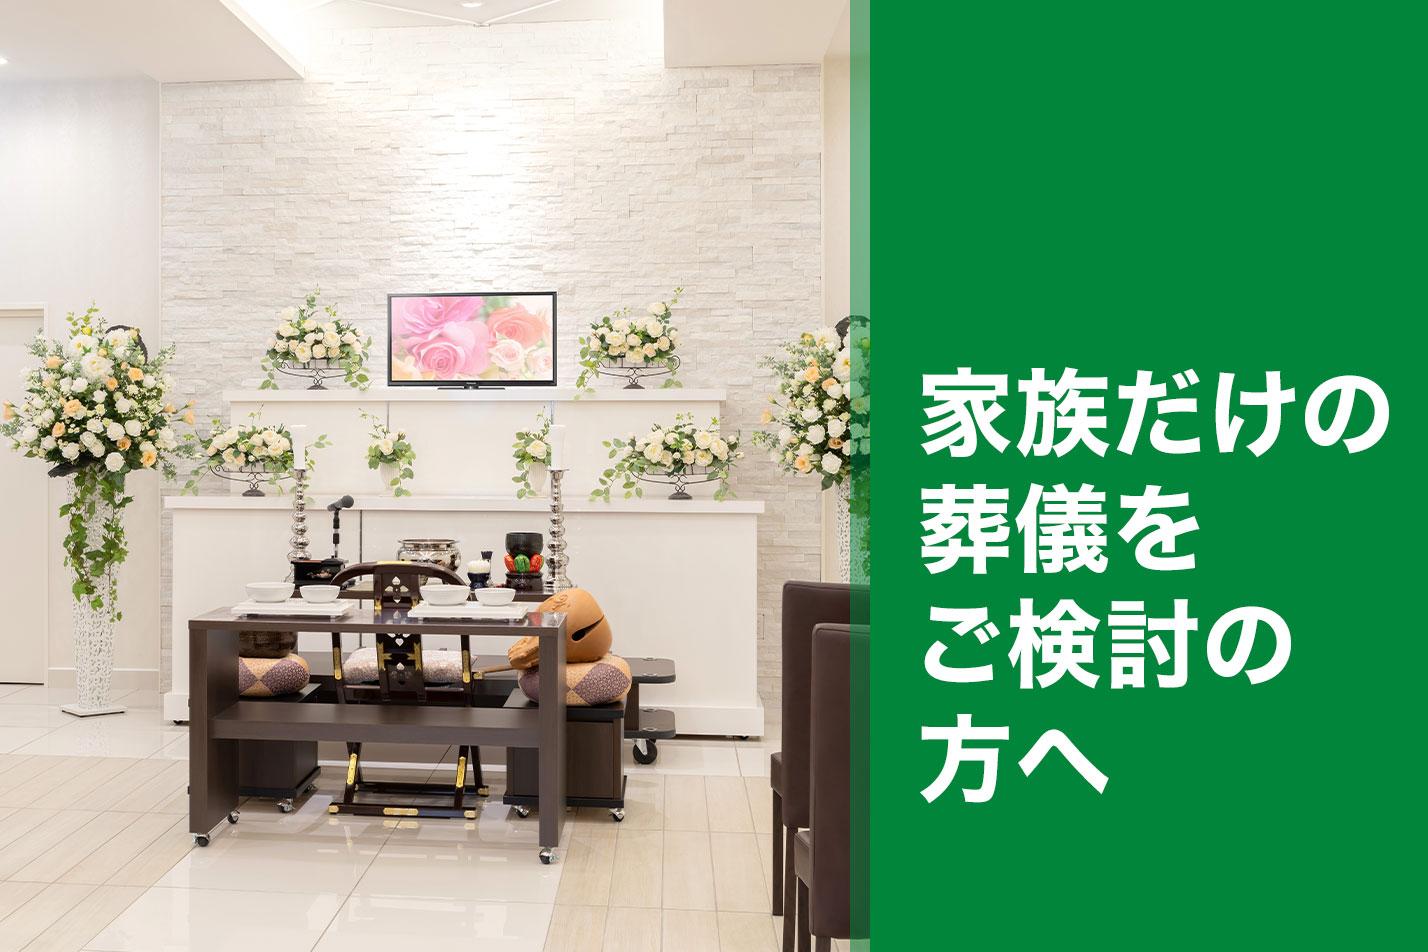  東大和市で家族だけで葬儀をご検討の方へのイメージ画像